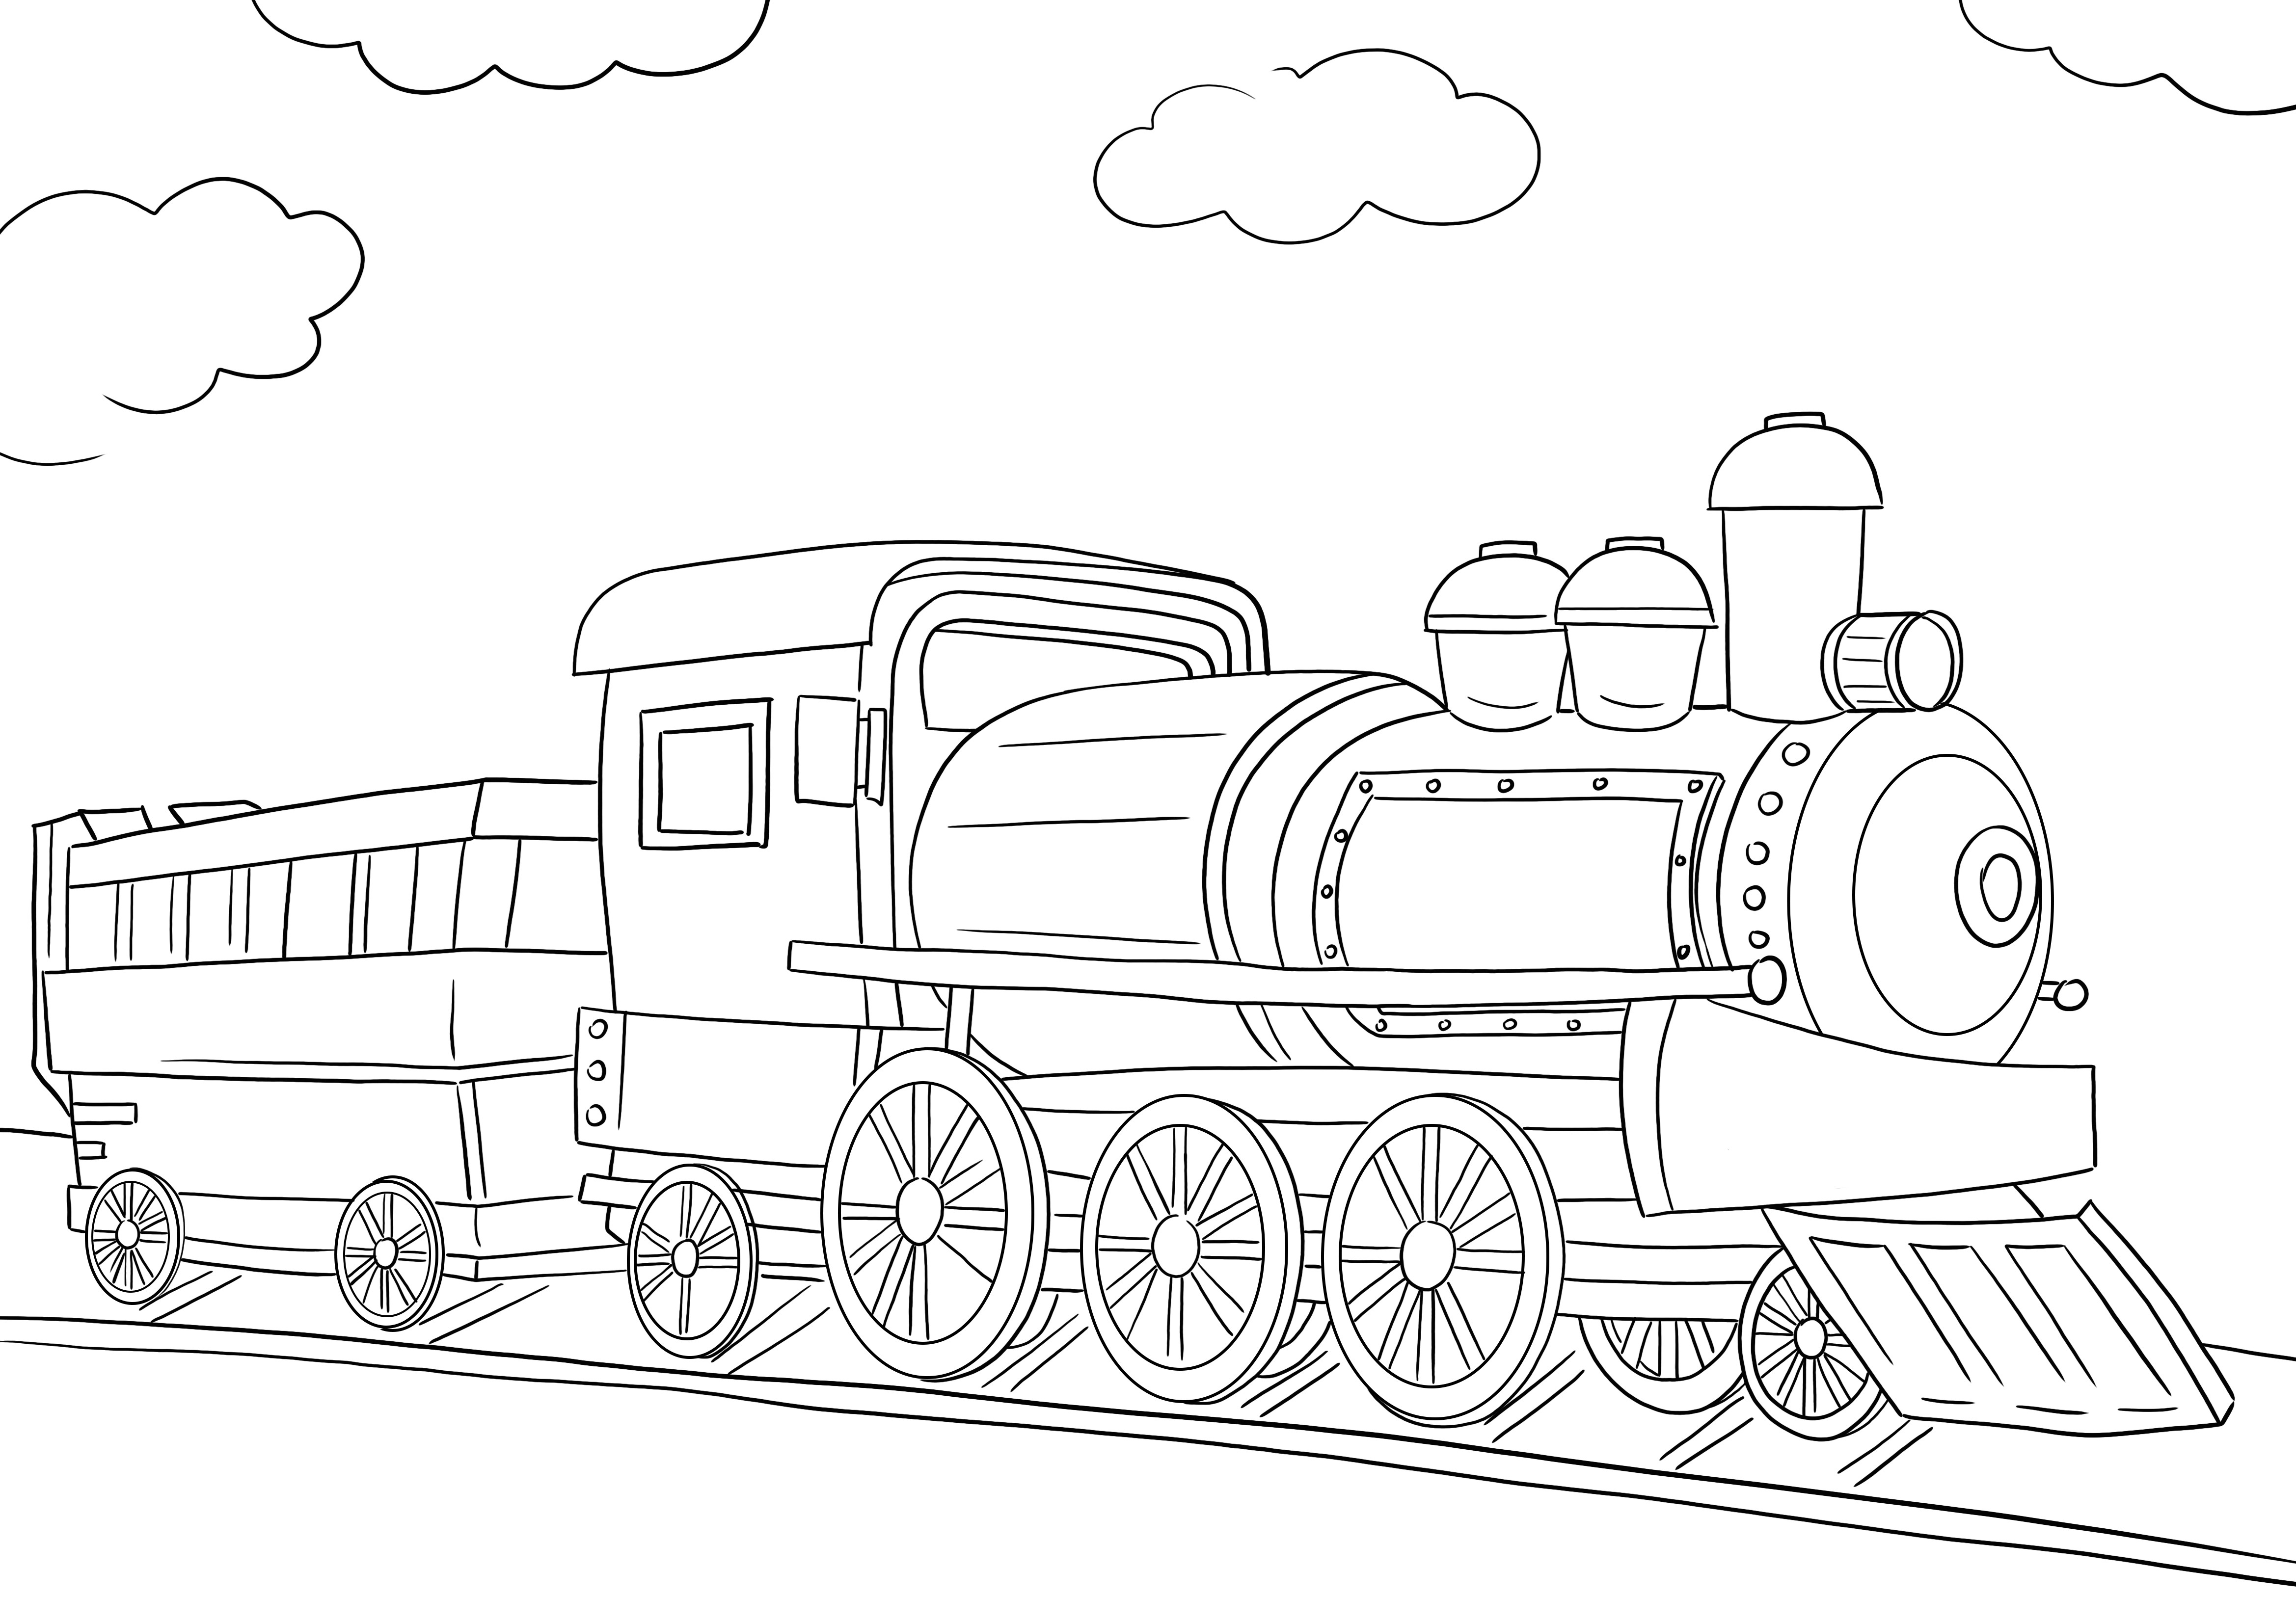 Una imagen para colorear de uso gratuito de la locomotora de un tren para imprimir o descargar